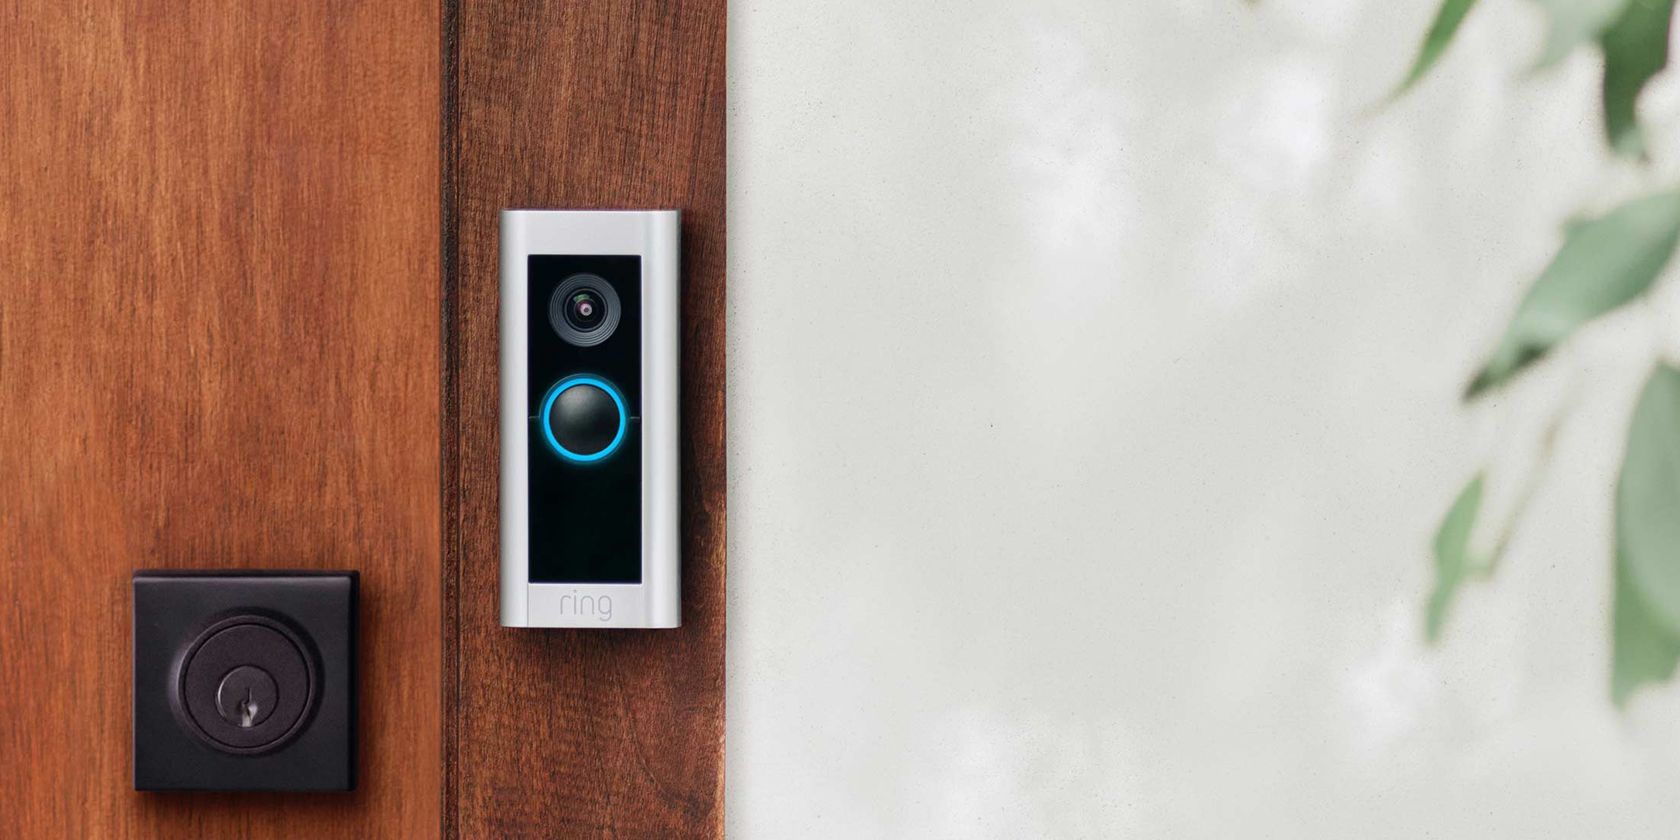 Do Video Doorbells Really Prevent Crime?